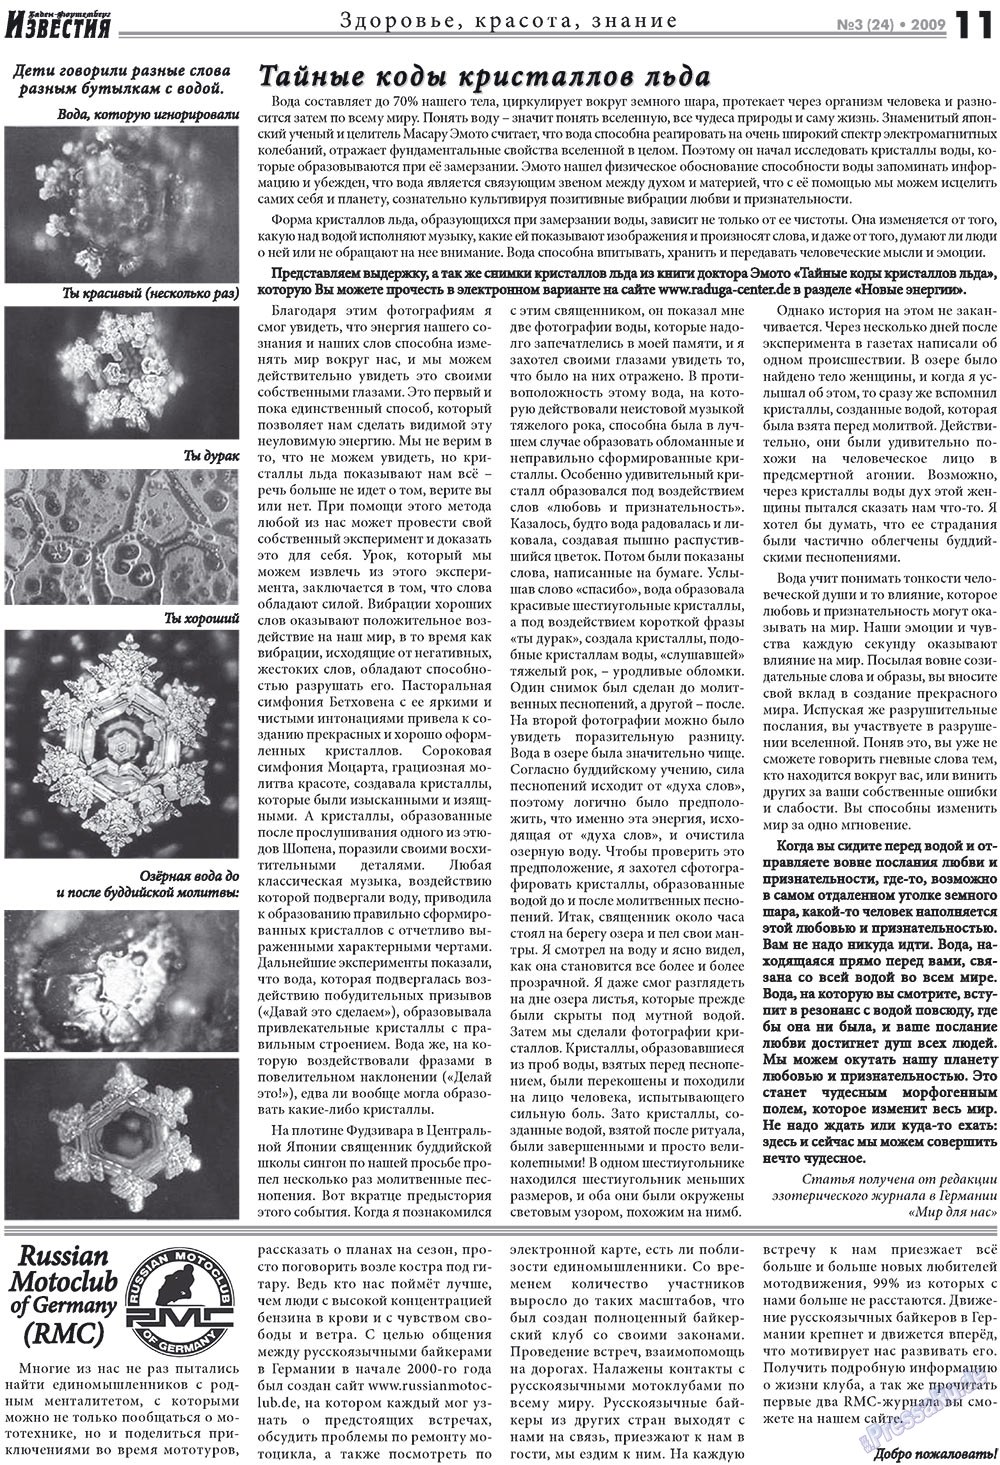 Известия BW, газета. 2009 №3 стр.11